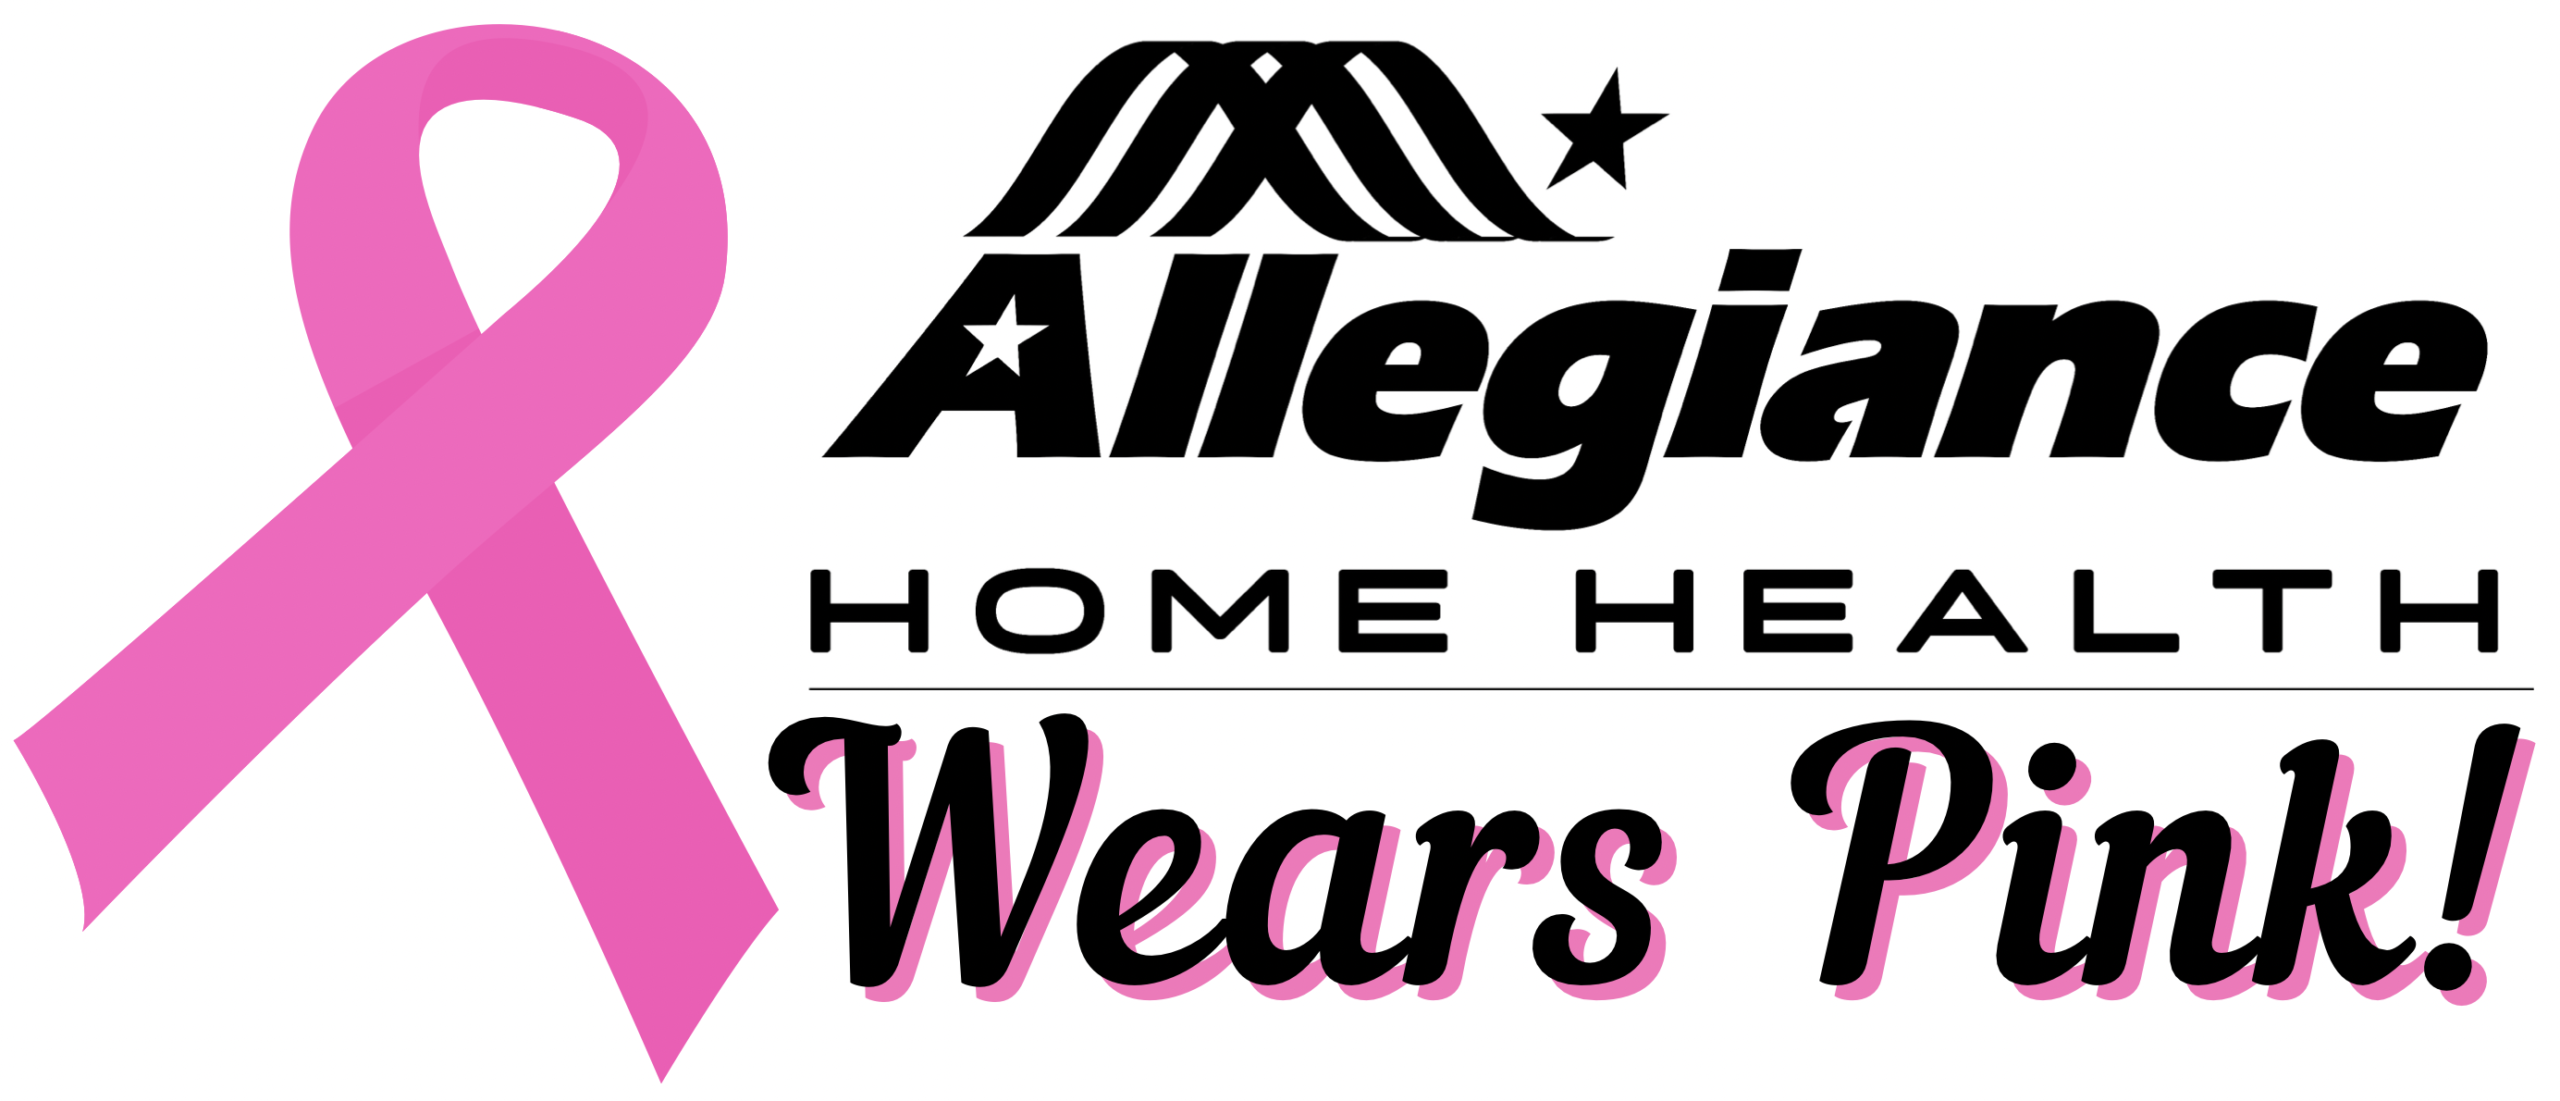 Allegiance Home Health Wears Pink!